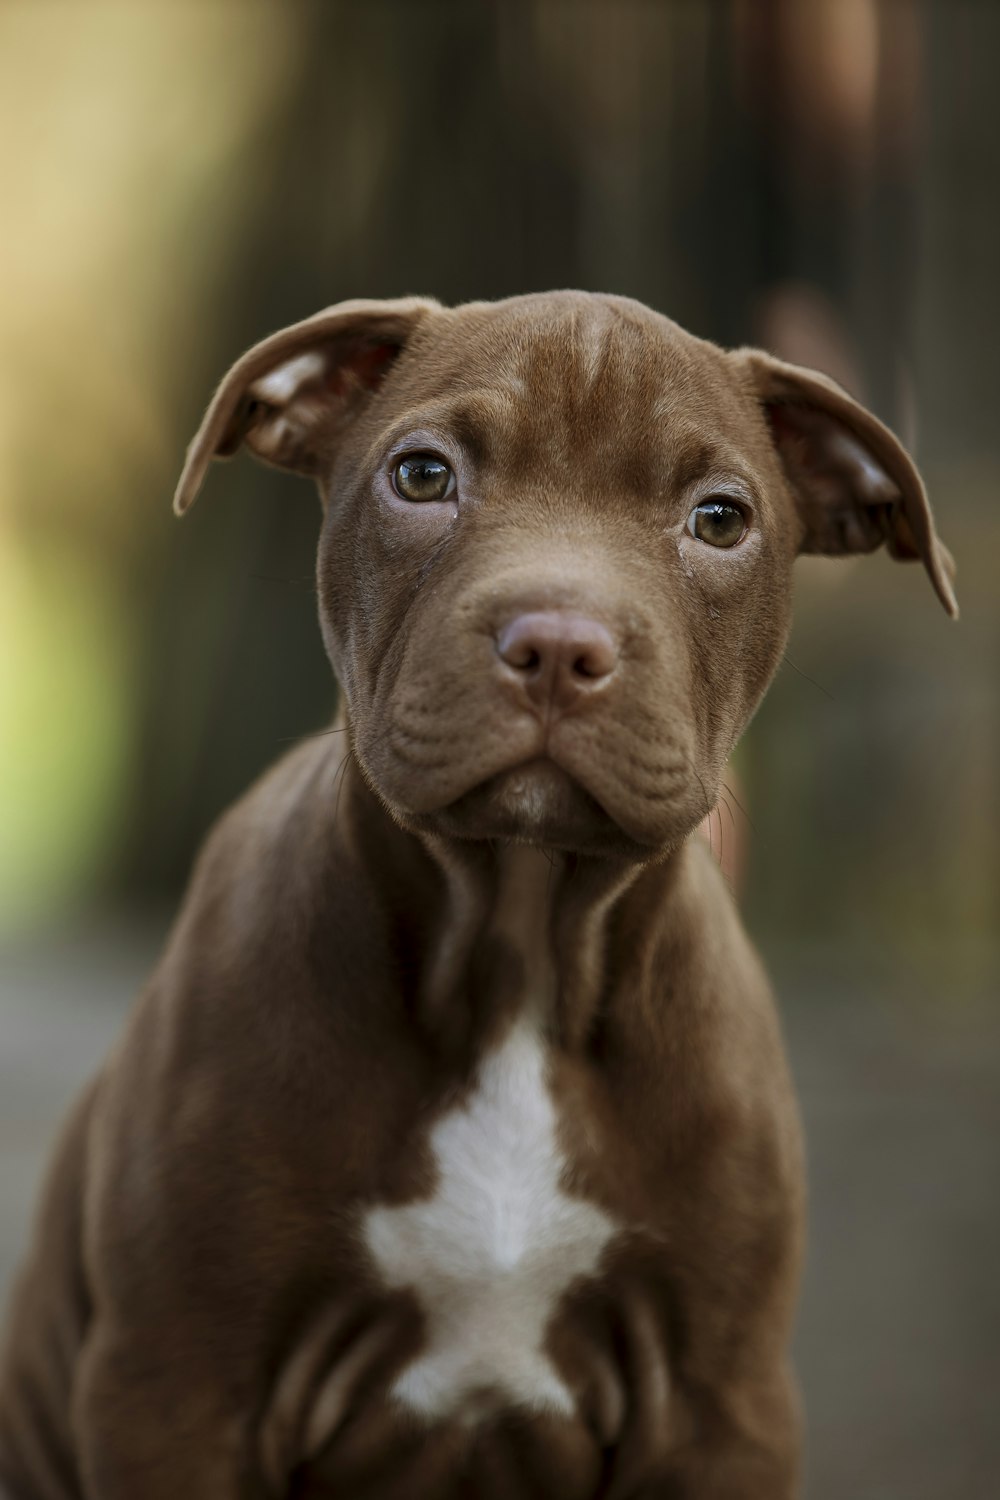 brown short coated medium sized dog